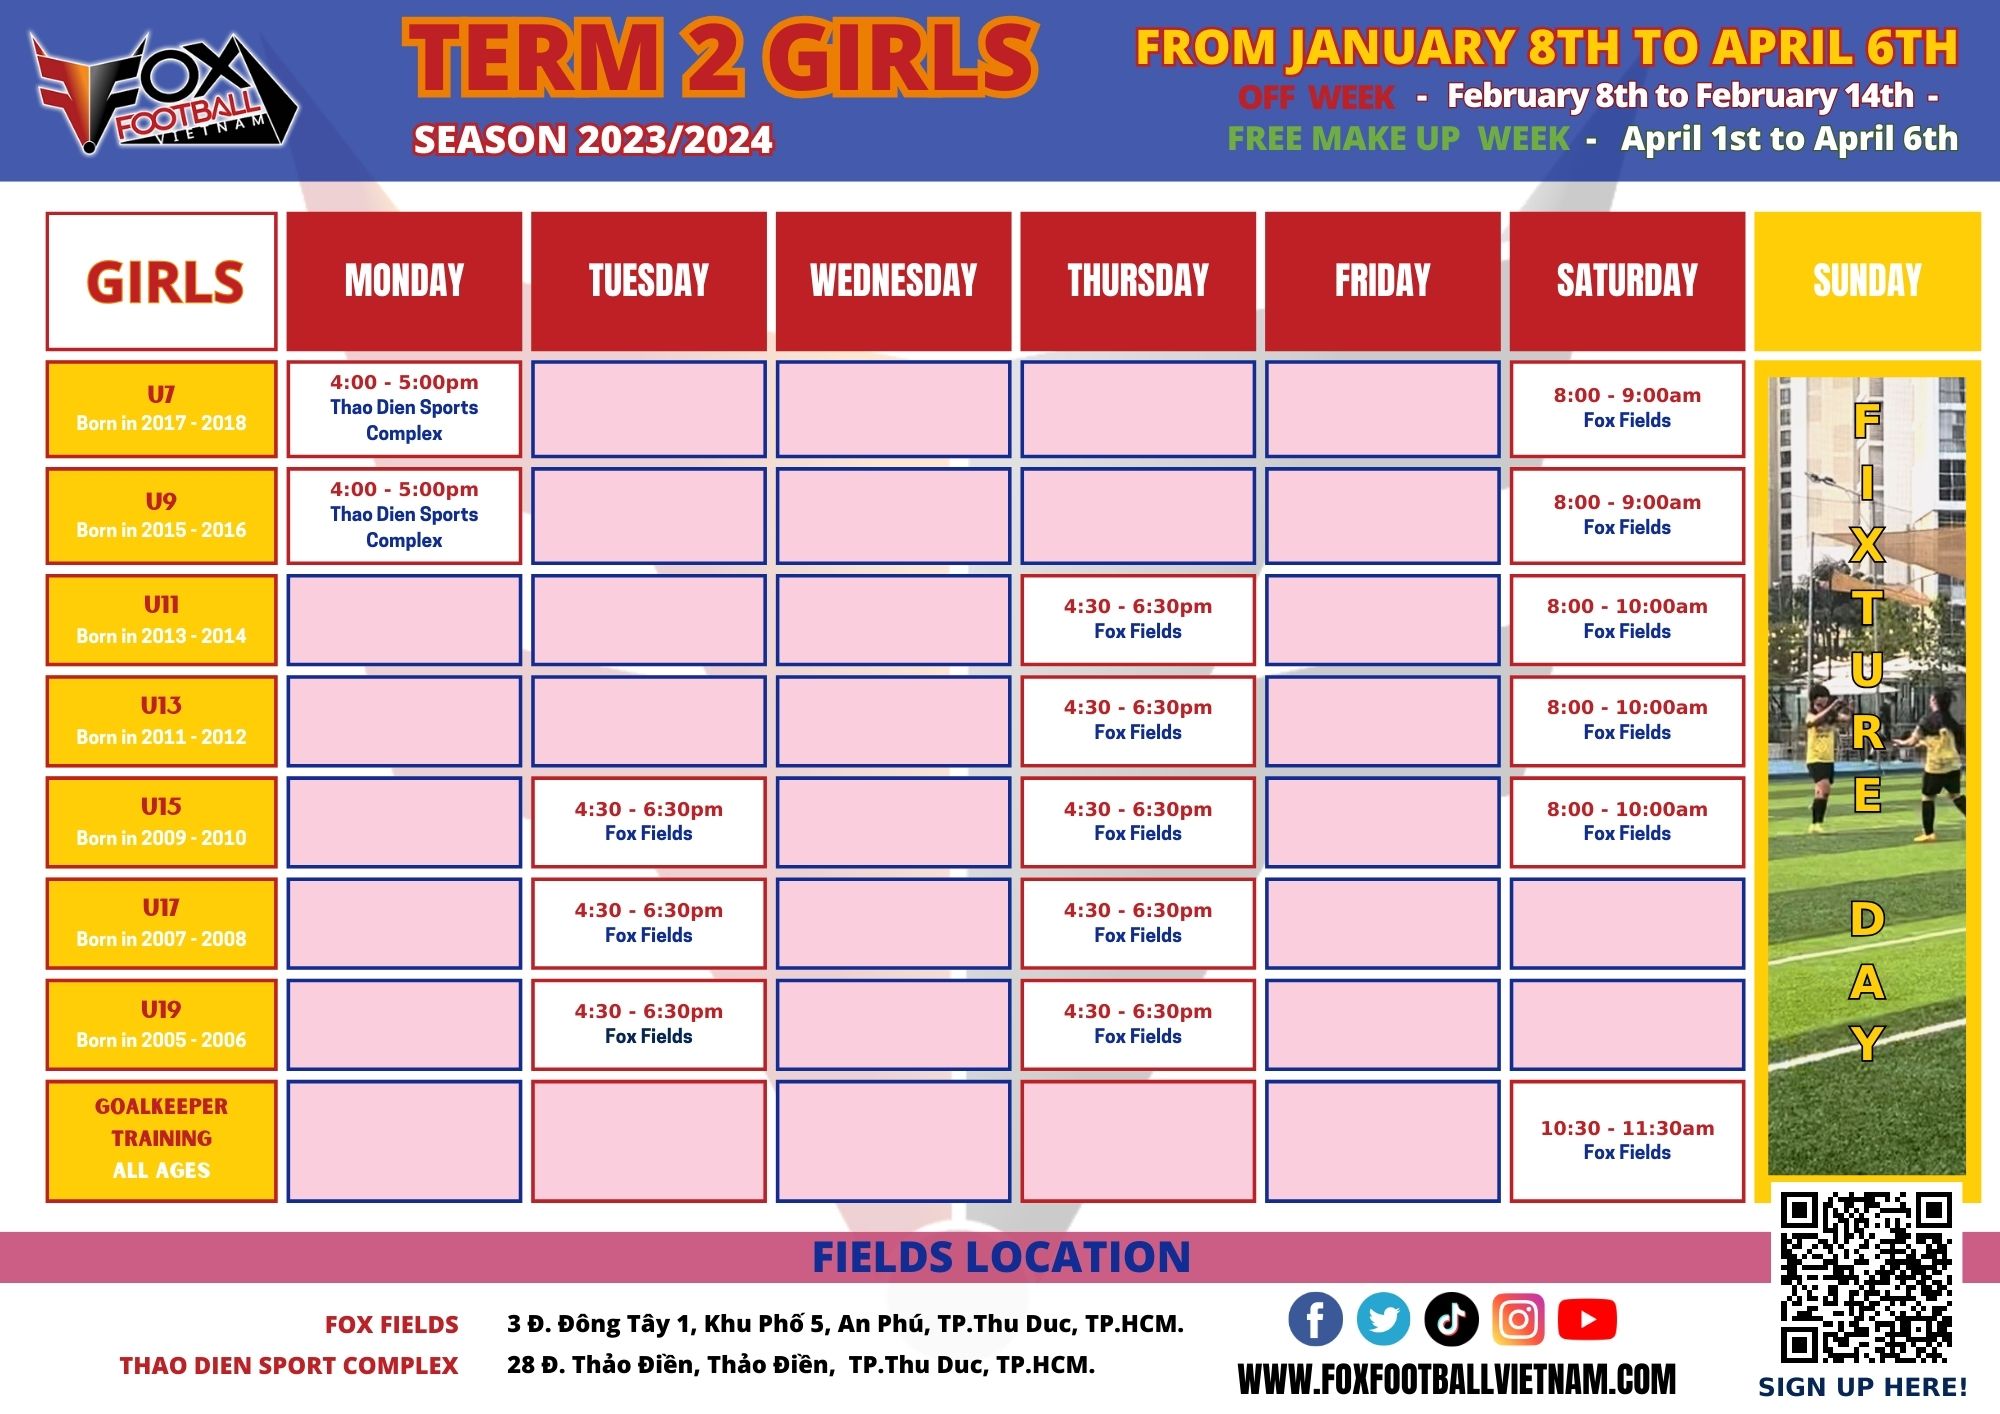 Girls Term 2 schedule